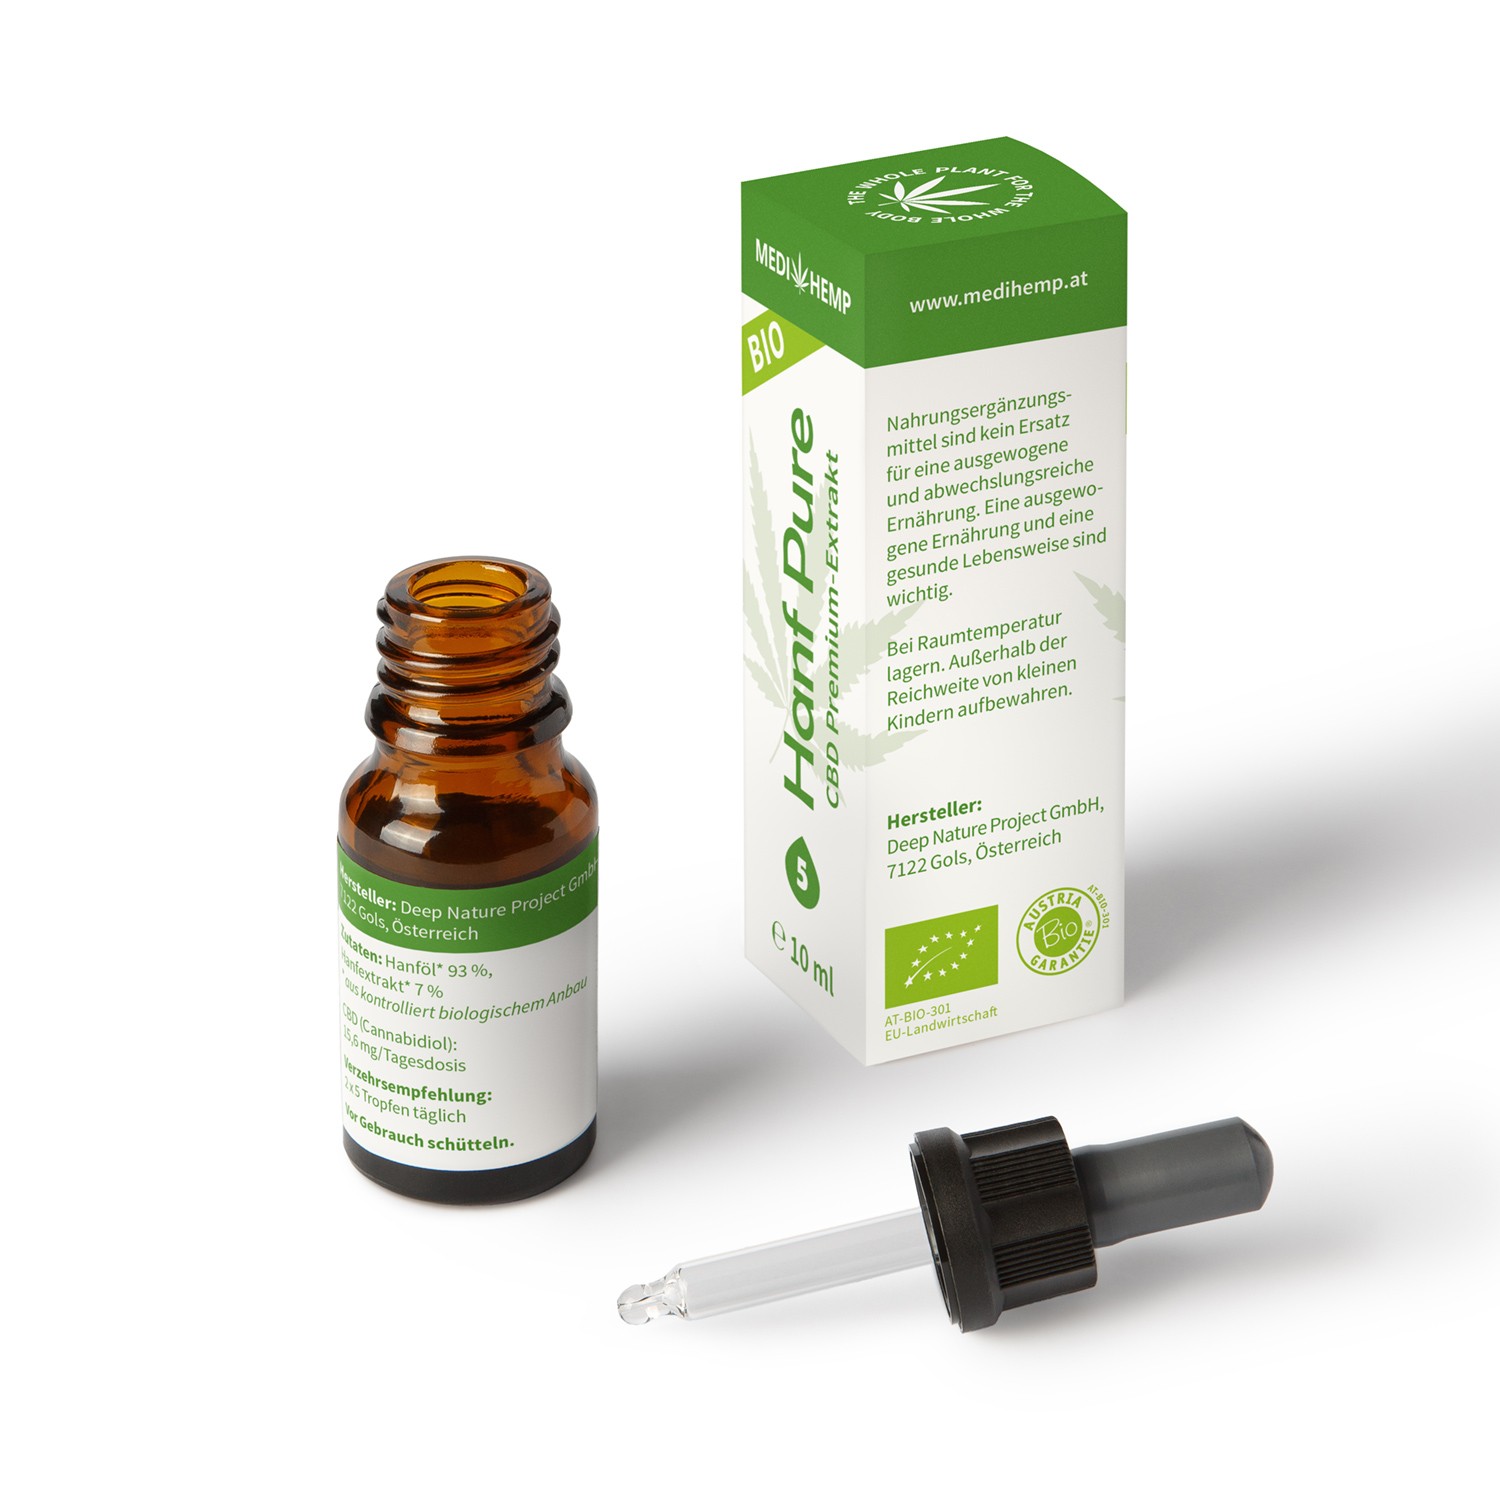 Medihemp Bio Hanf Pure Öl - 5 % -  10ml - 500 mg CBD Aromaöl